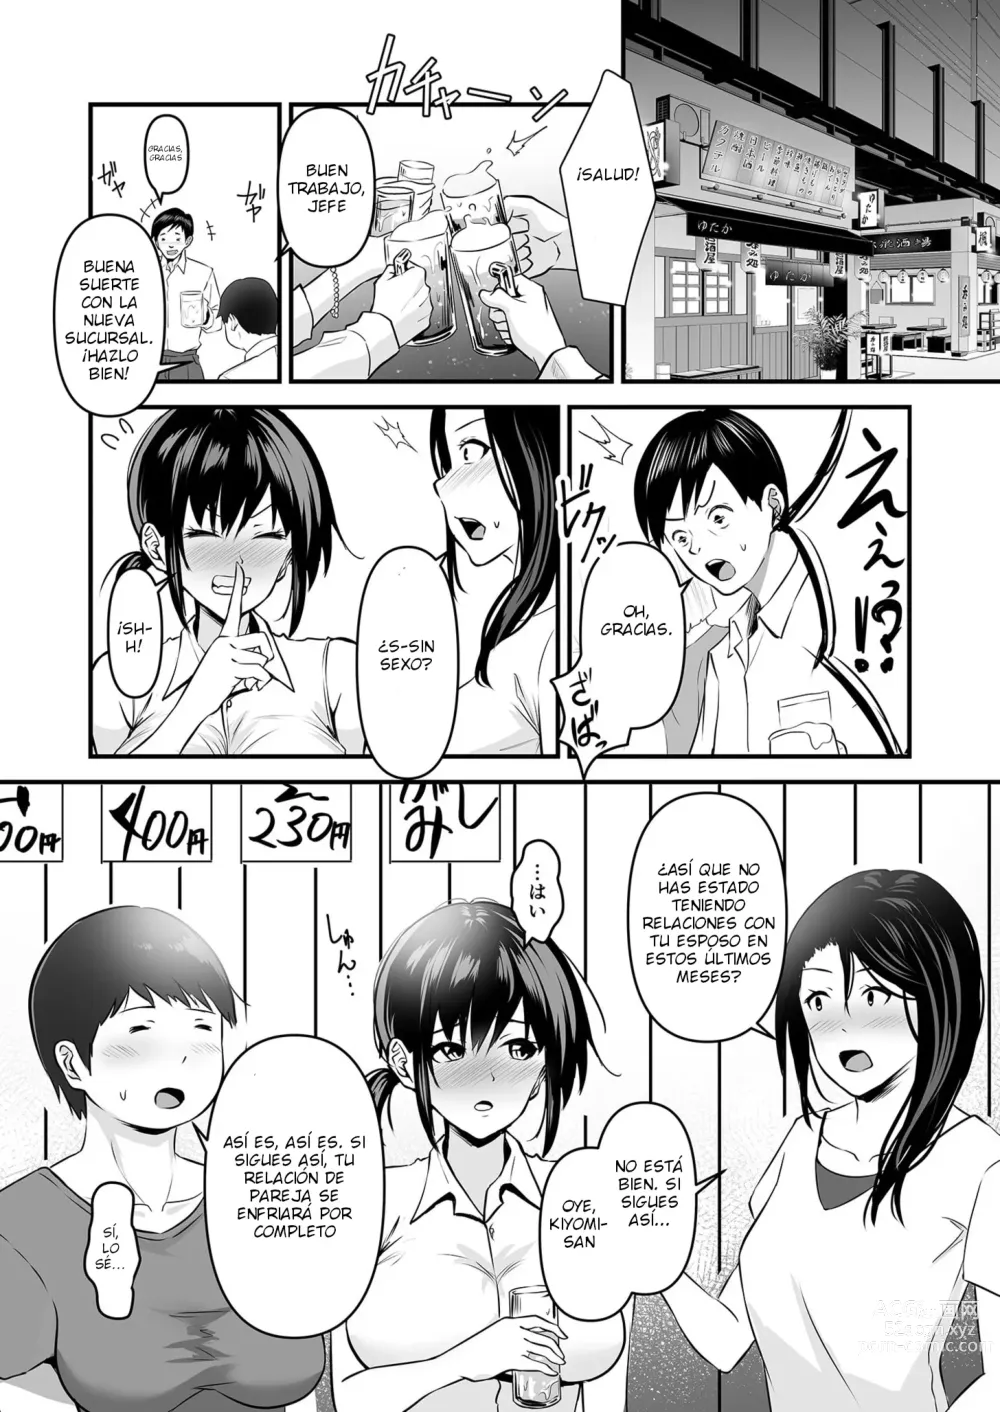 Page 4 of manga YOINOAYAMACHI